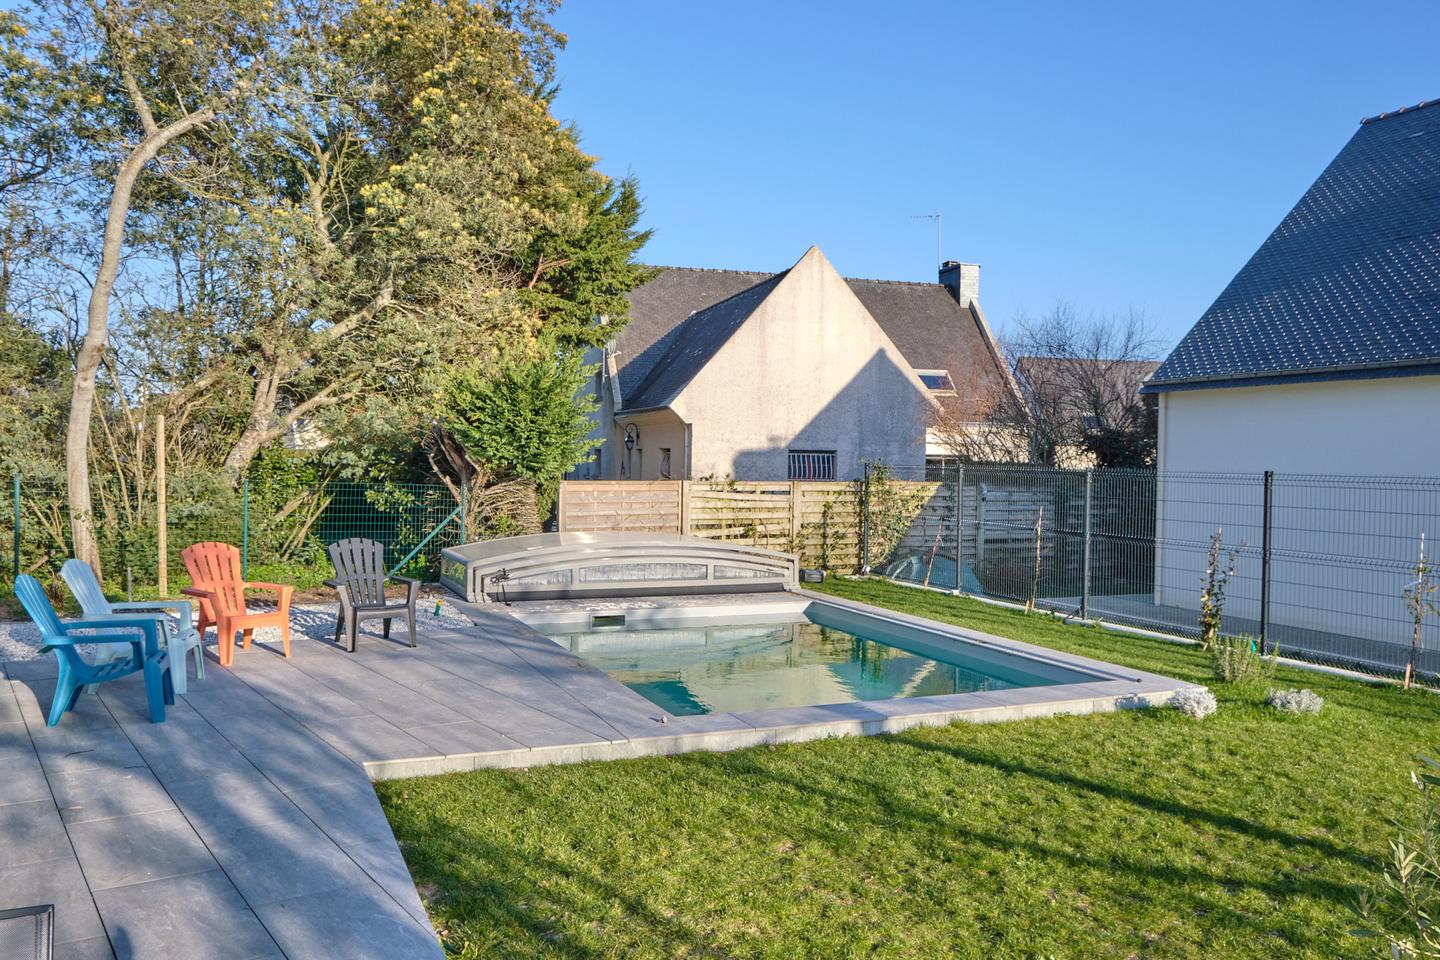 Hôte GreenGo: Grande maison familiale avec piscine pour 10 personnes, 12 max. Note de 4.9 sur une autre plateforme - Image 4